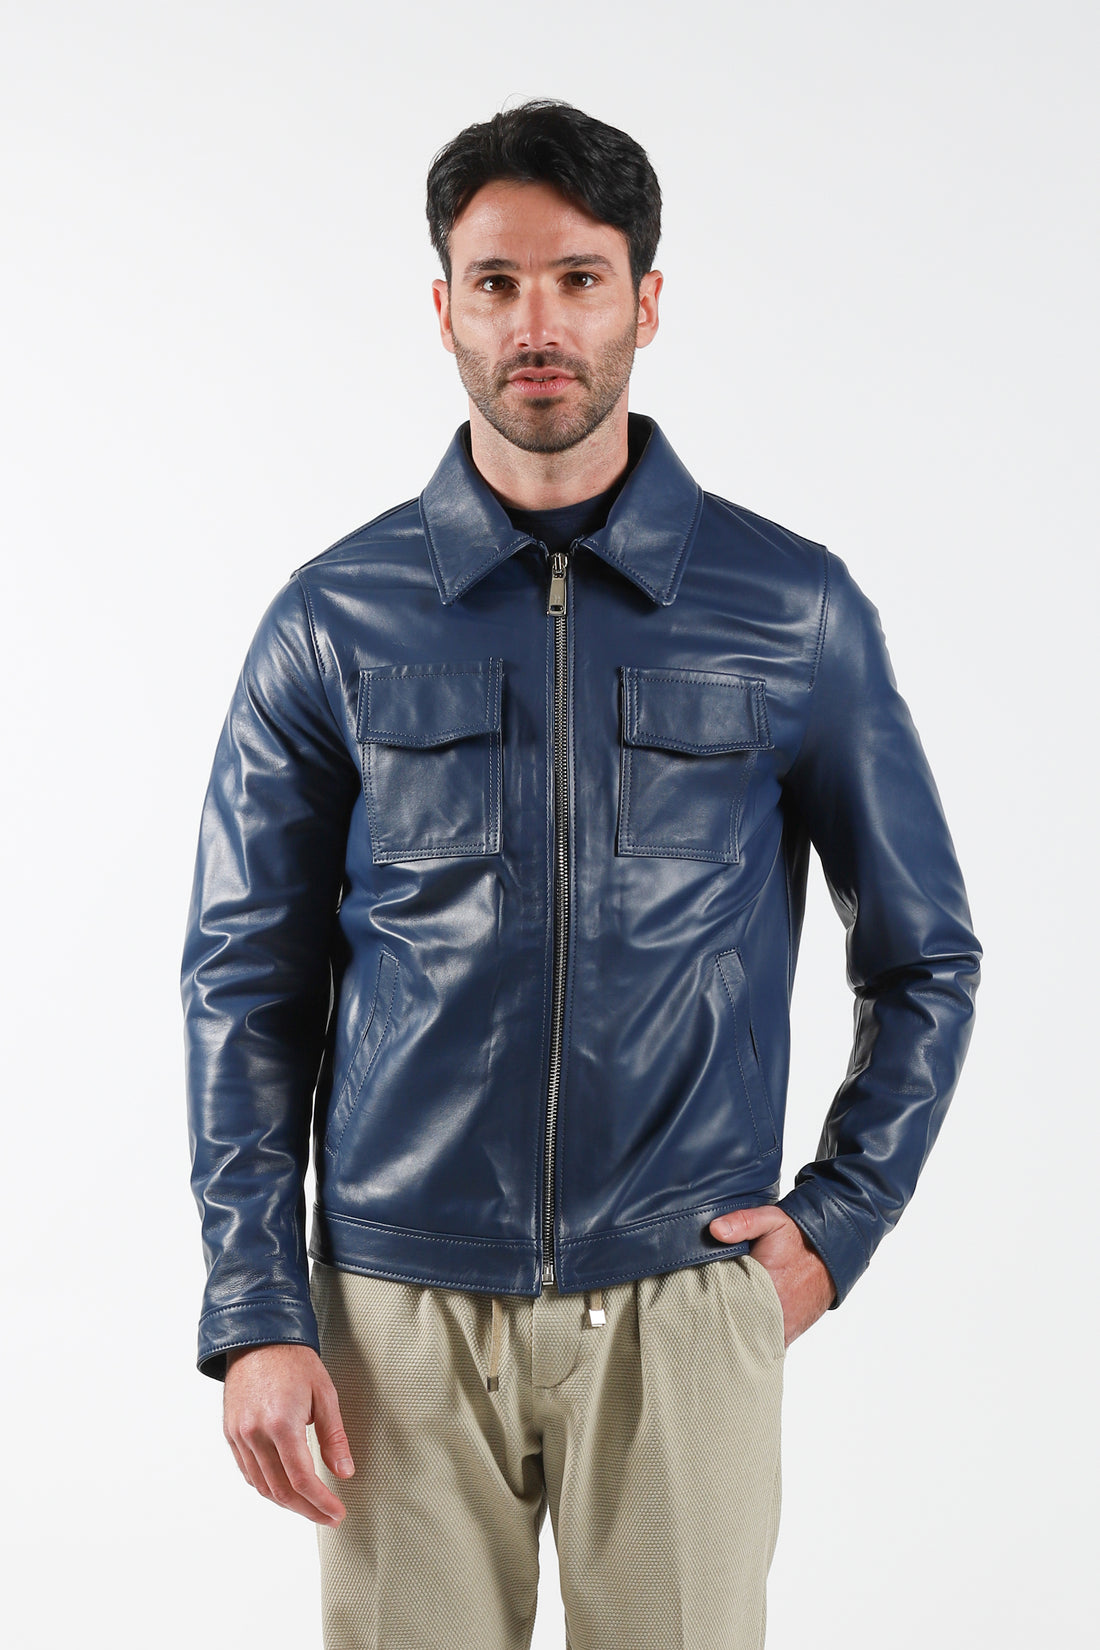 Shirt model leather jacket - Blue